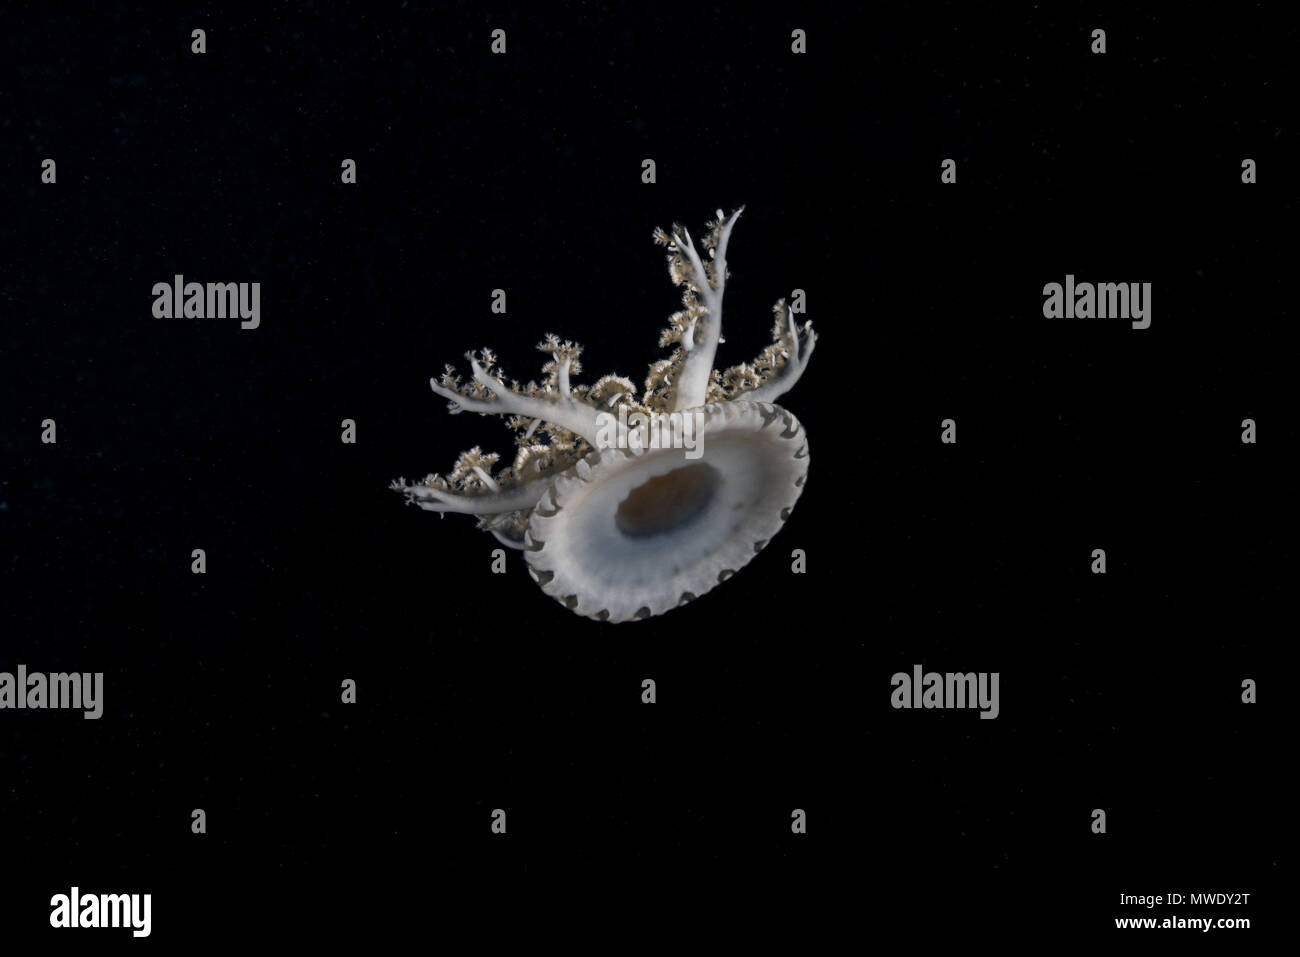 Indischer Ozean, Malediven. 21 Mär, 2018. Kopfüber Quallen (Cassiopea Andromeda) in der Nacht Kreditkarten: Andrey Nekrasov/ZUMA Draht/ZUMAPRESS.com/Alamy leben Nachrichten Stockfoto